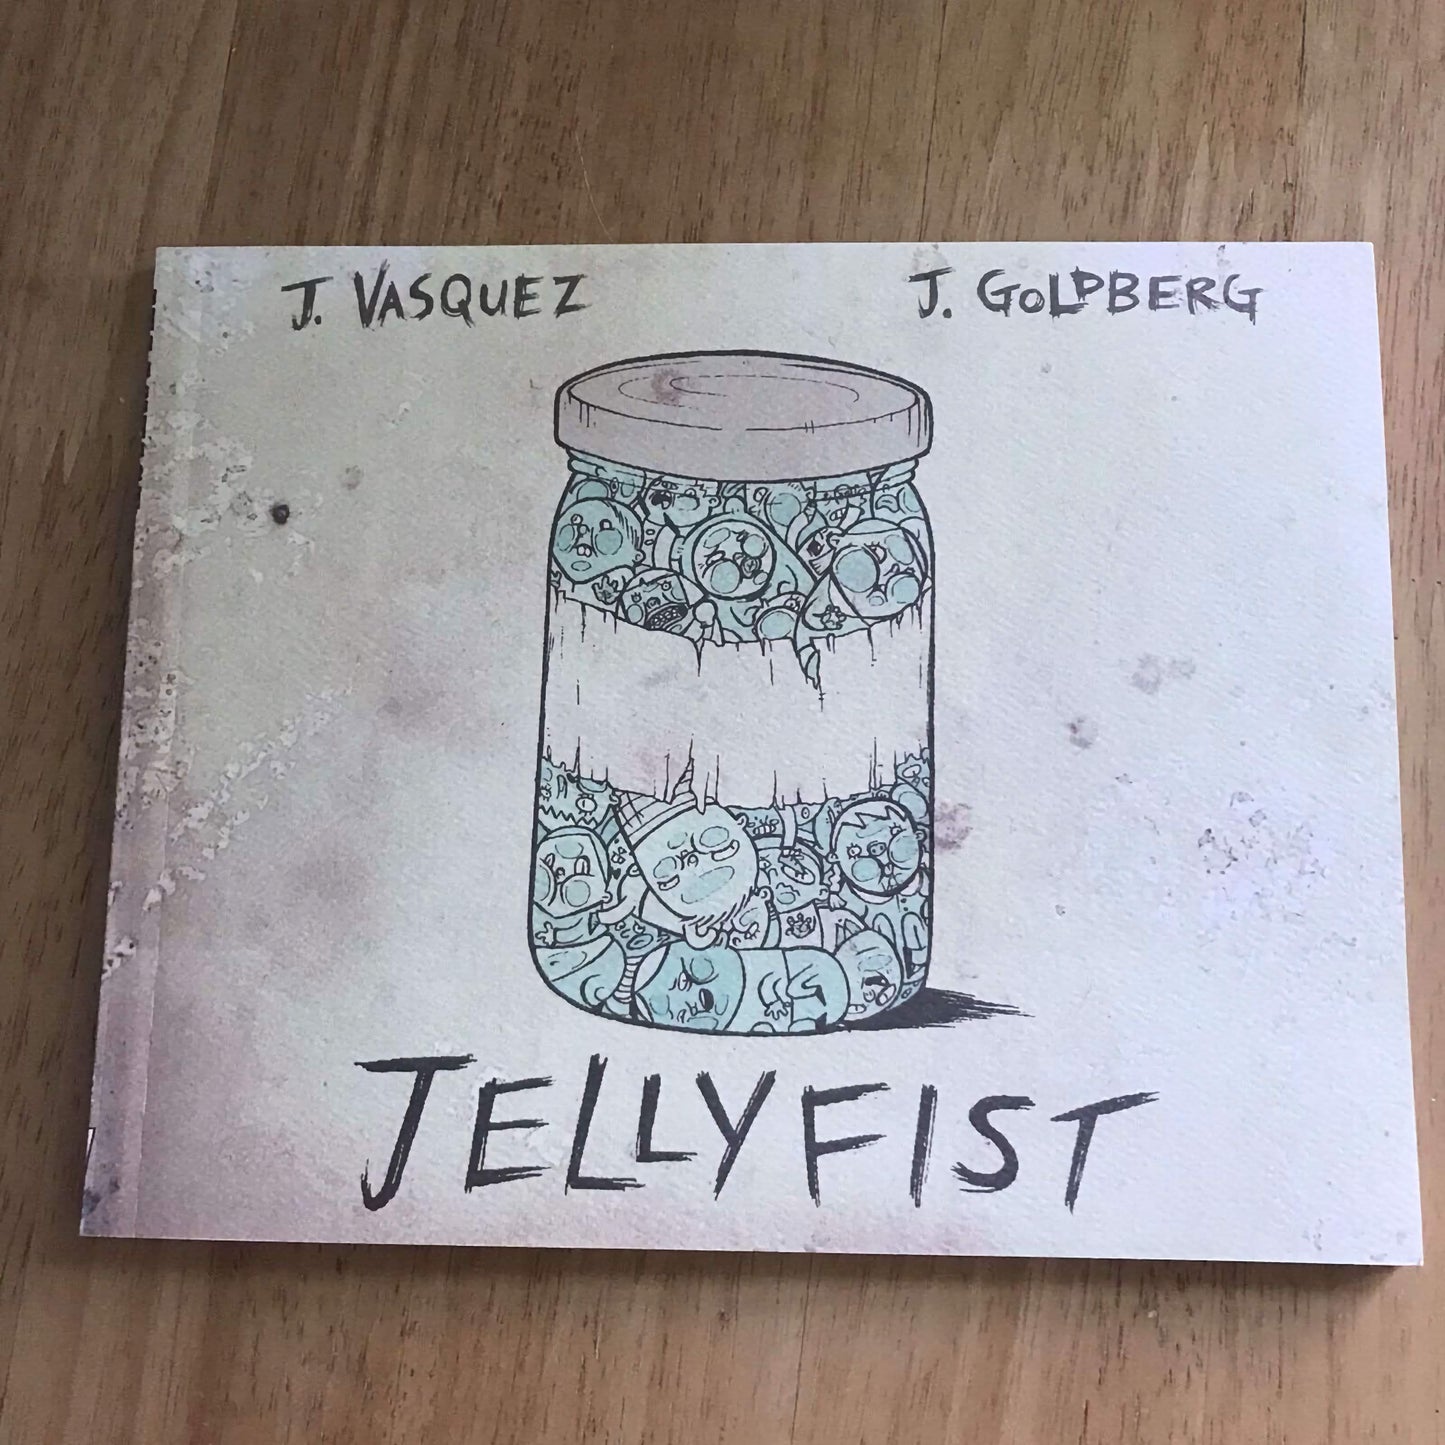 *1st*Jellyfist by Jhonen Vasquez & Jenny Goldberg(Paperback, 2007) SLG Publishin